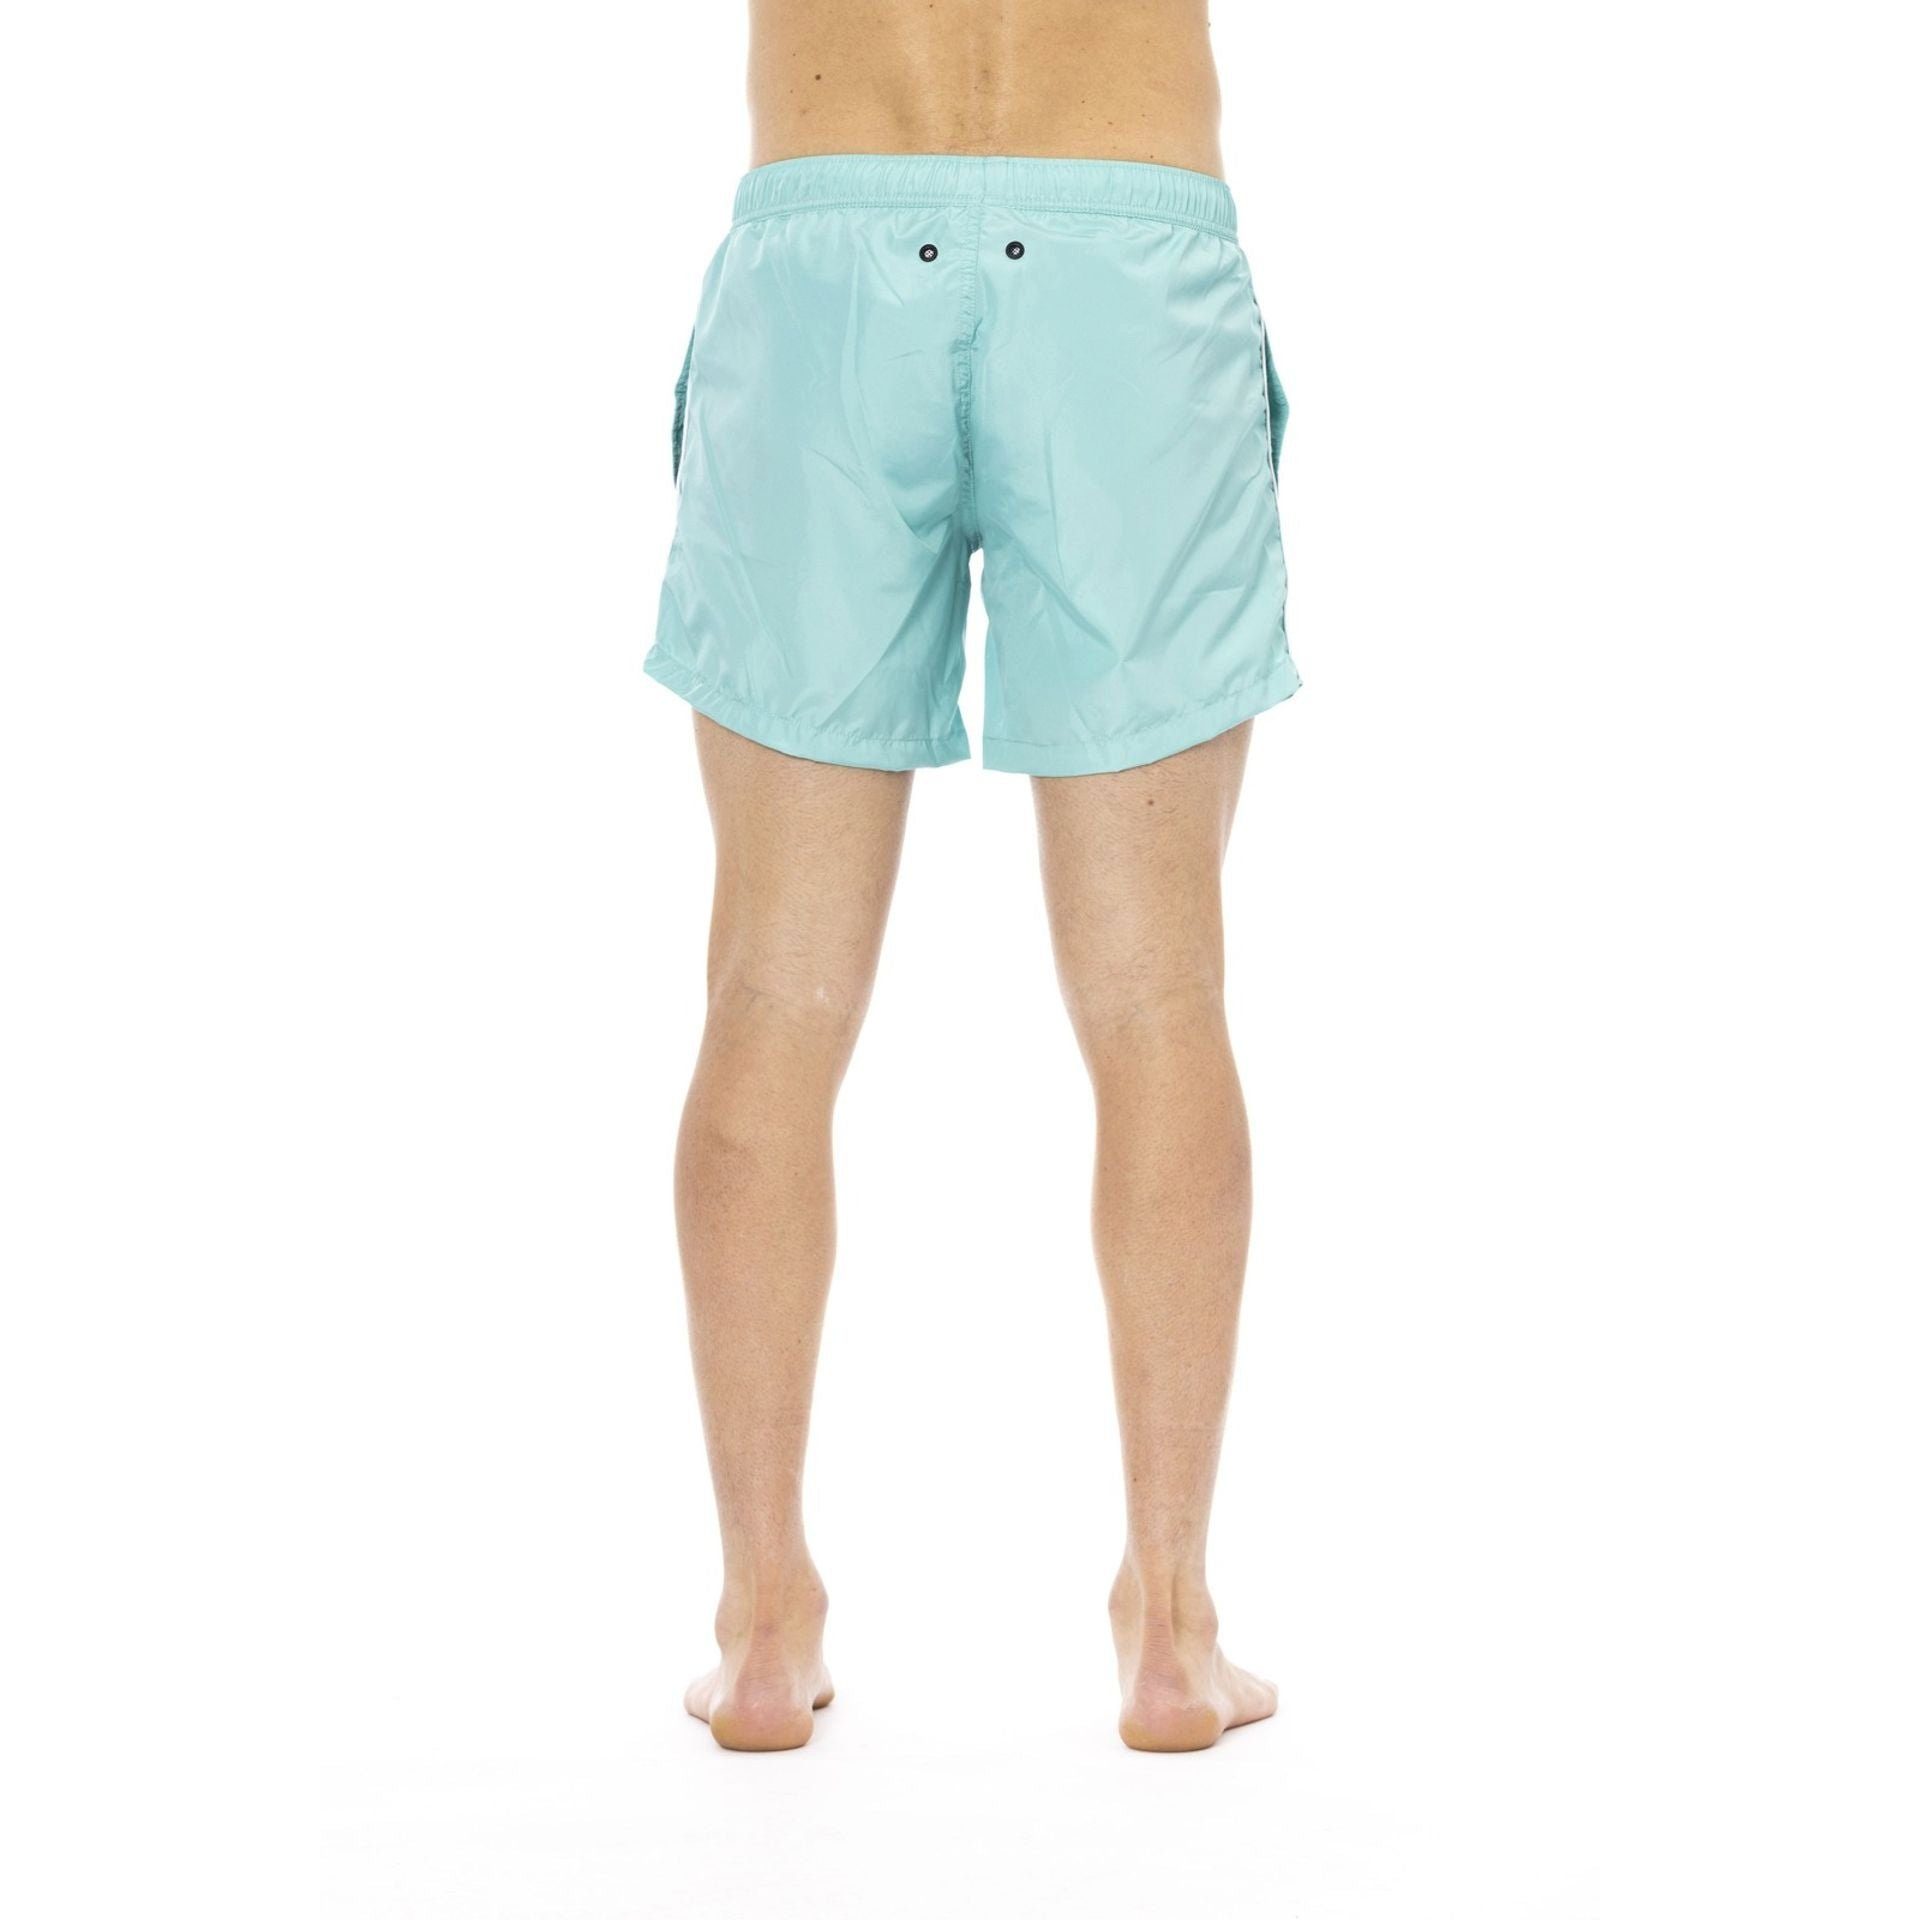 Badeshorts Boxershorts, Bikkembergs Sommerurlaub deinen Herren Beachwear, für Blau Must-Have Bikkembergs